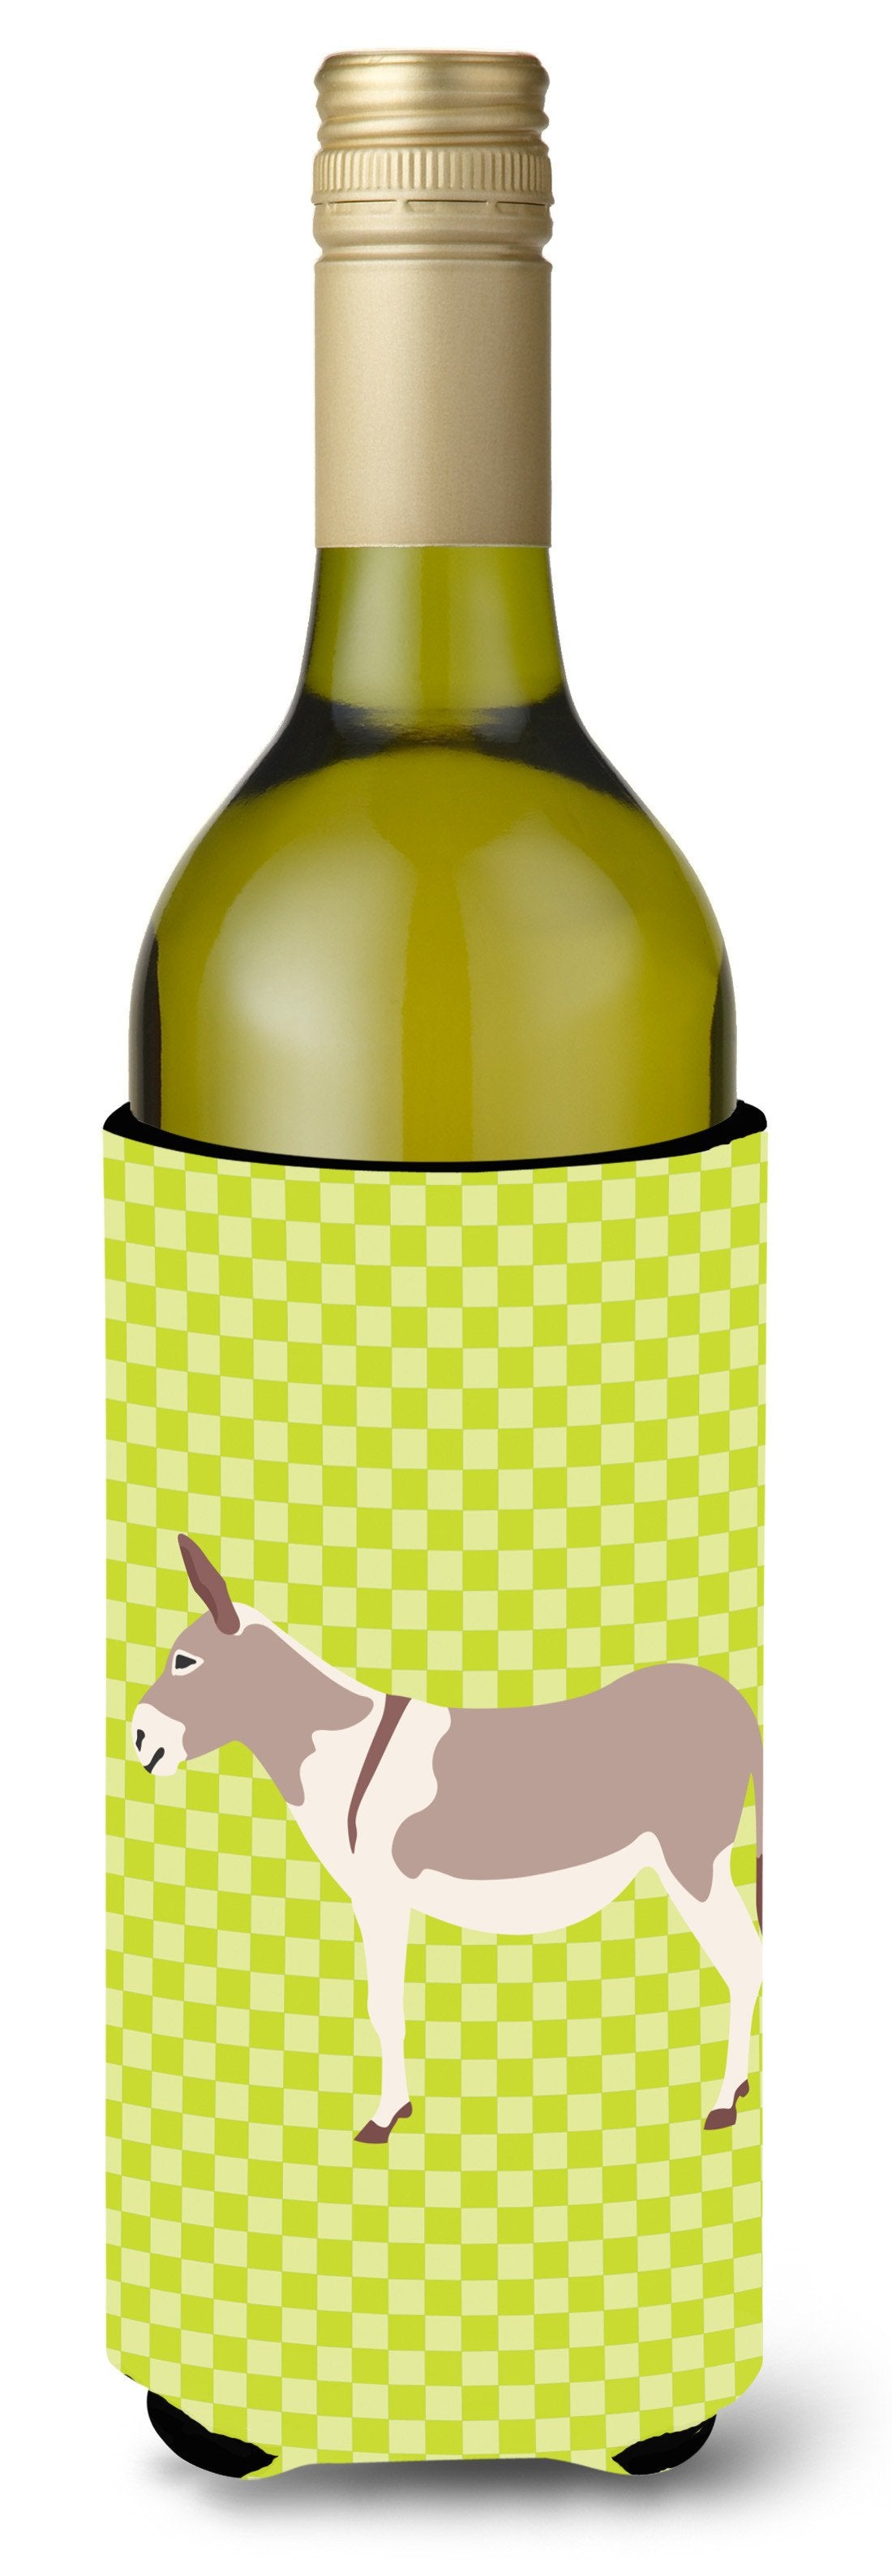 Australian Teamster Donkey Green Wine Bottle Beverge Insulator Hugger BB7672LITERK by Caroline's Treasures